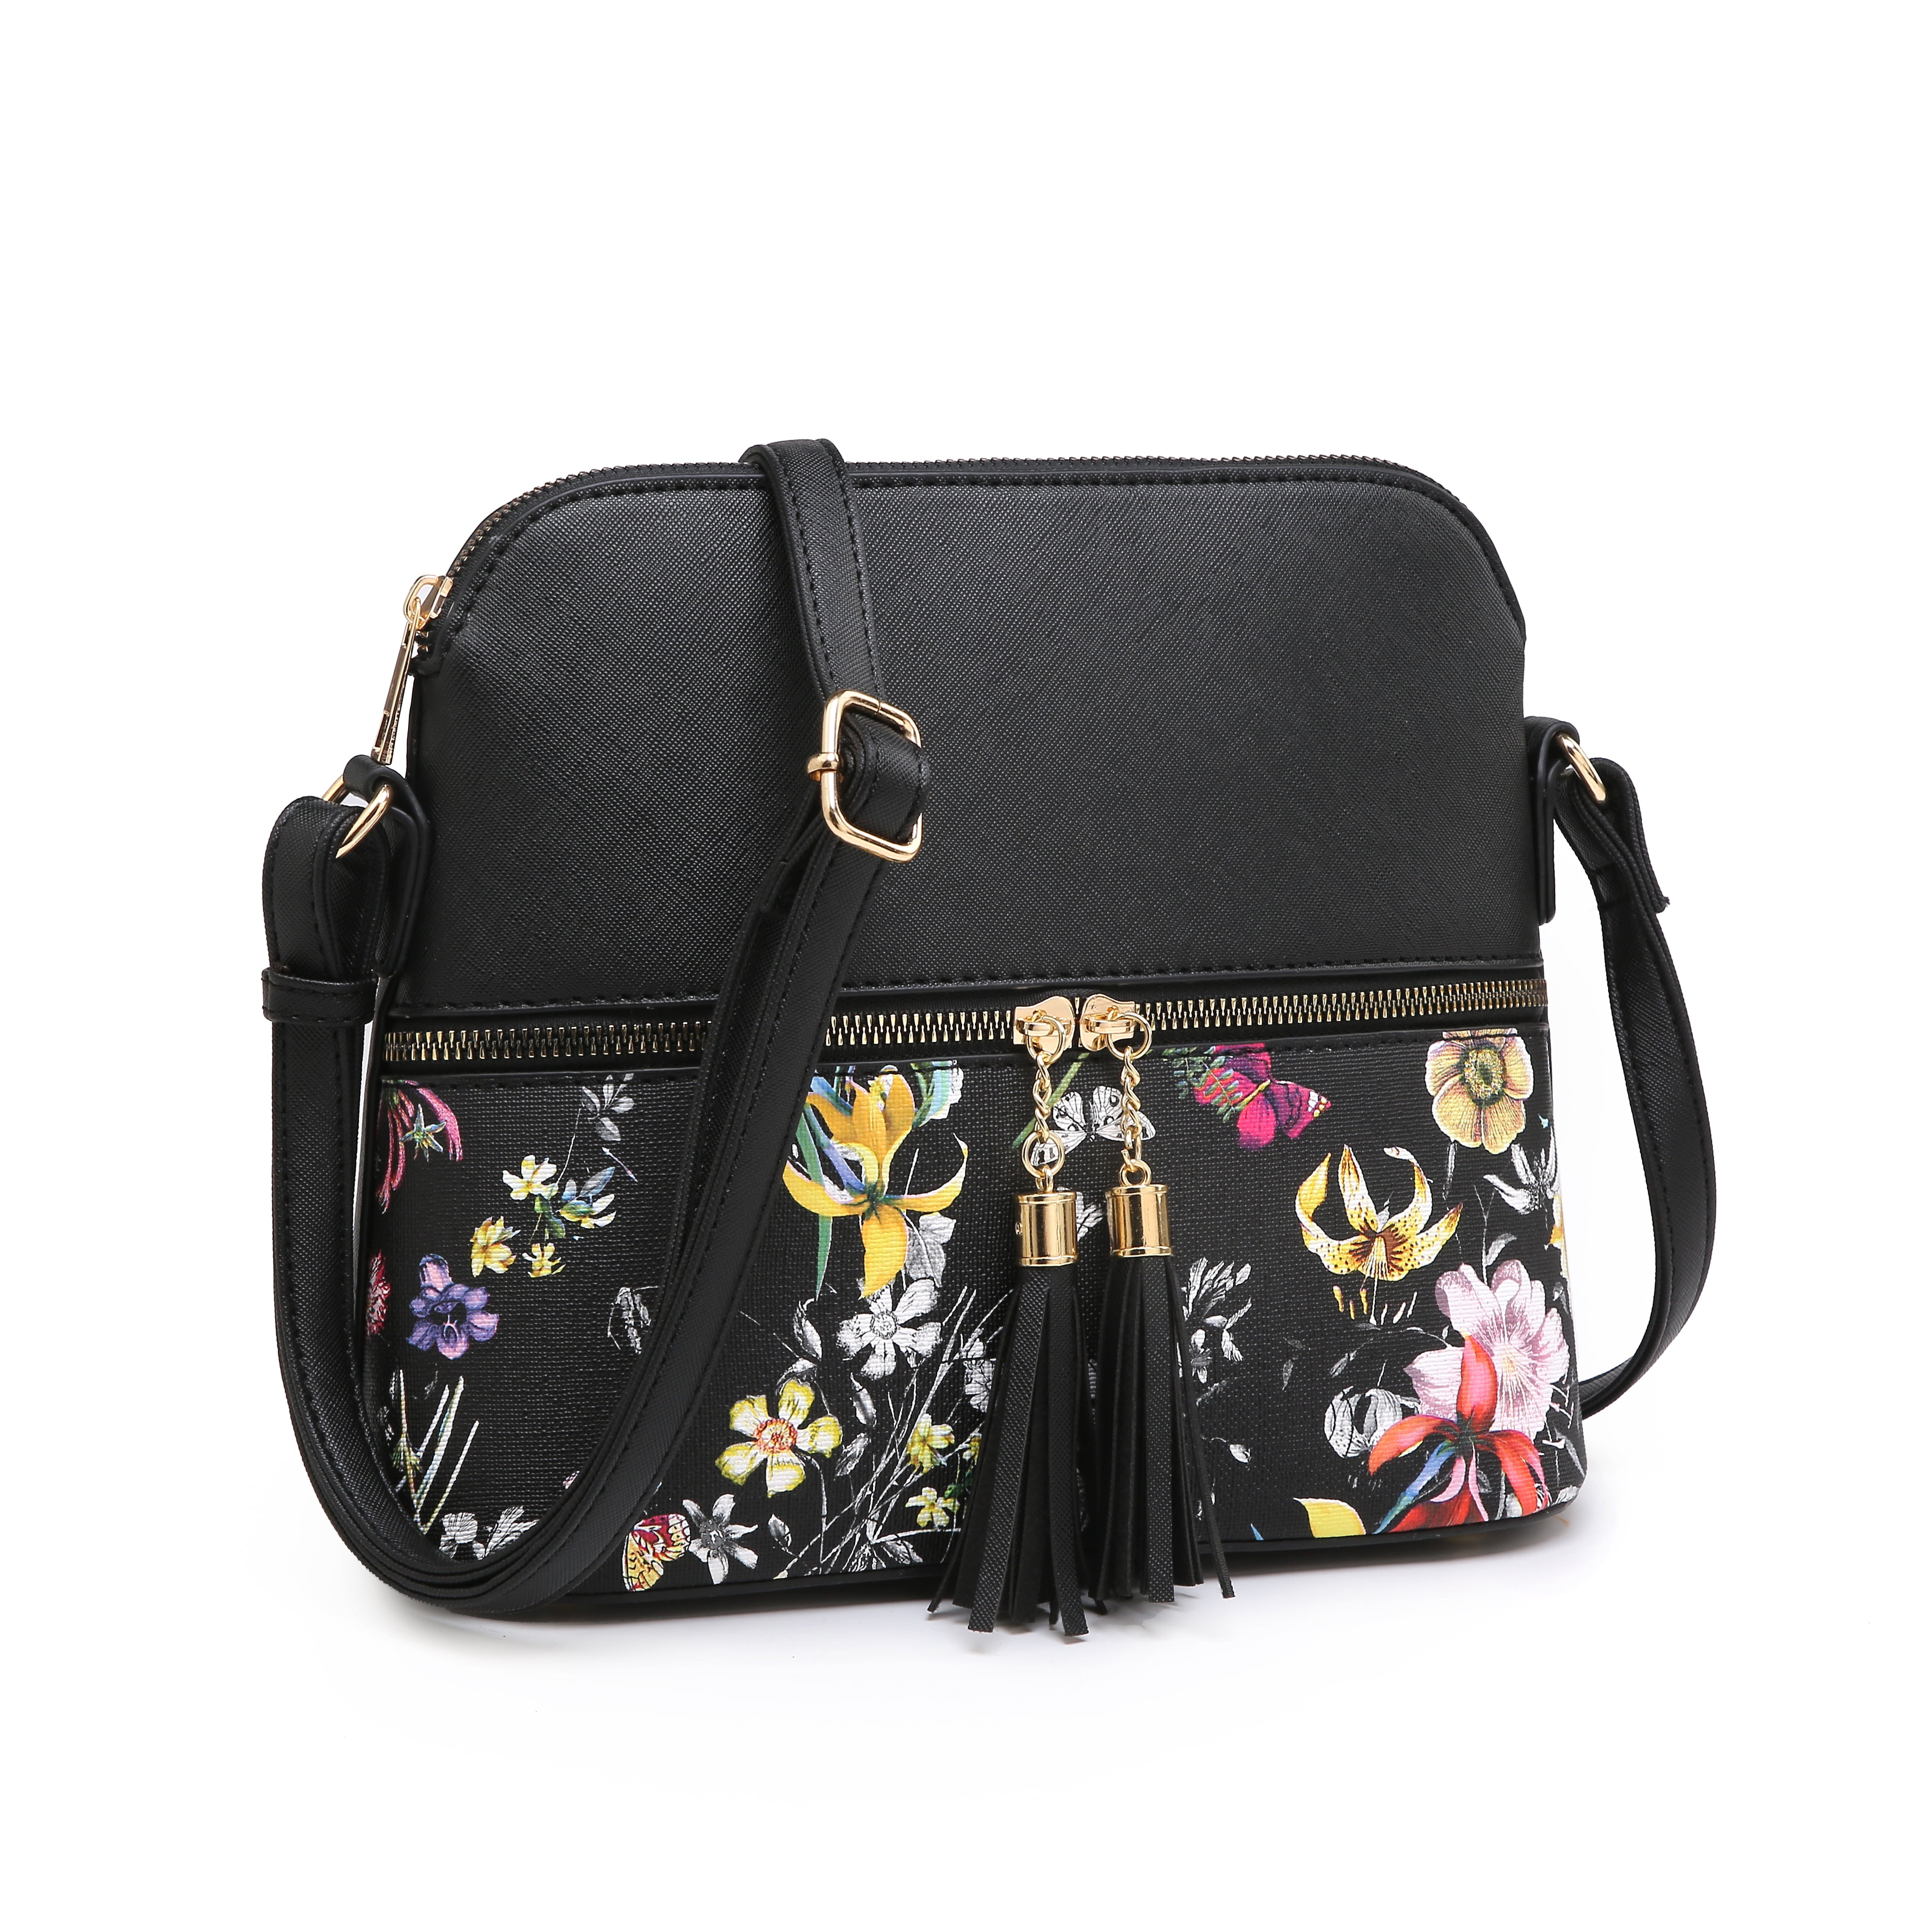 Cooper girl Watercolor Poppy Tote Bag Top Handle Handbag Shoulder Bag Large Capacity 